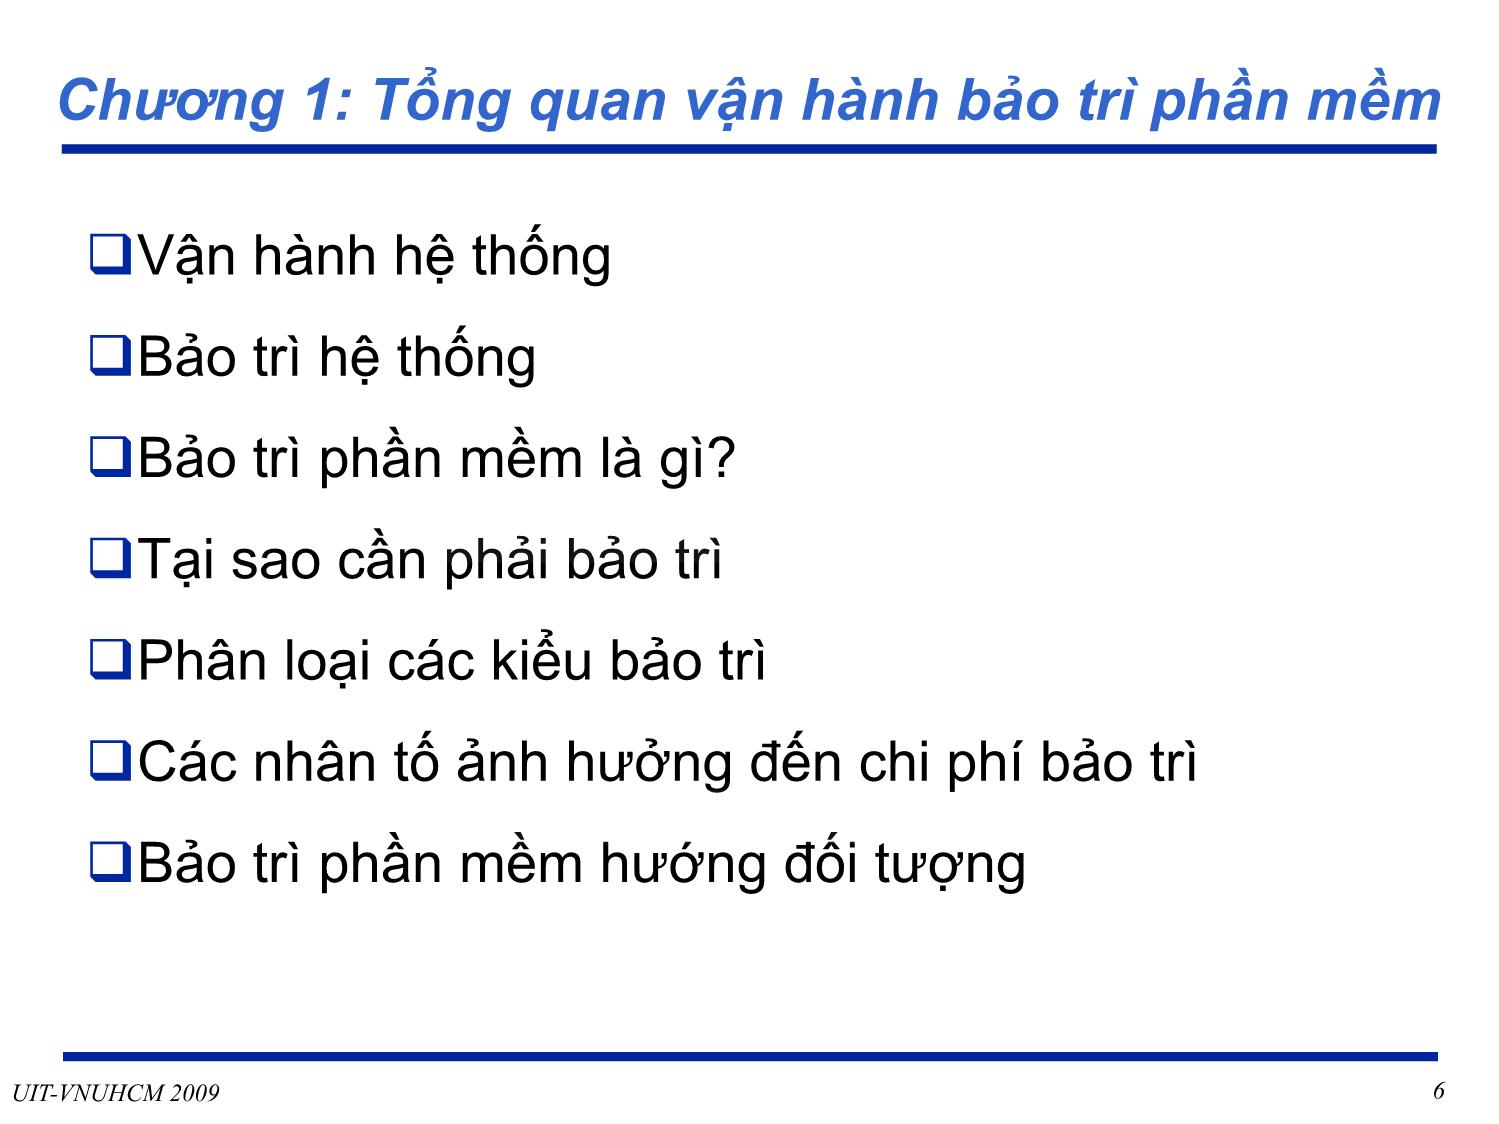 Bài giảng Phát triển vận hành bảo trì phần mềm - Giới thiệu môn học - Nguyễn Thị Thanh Trúc trang 6